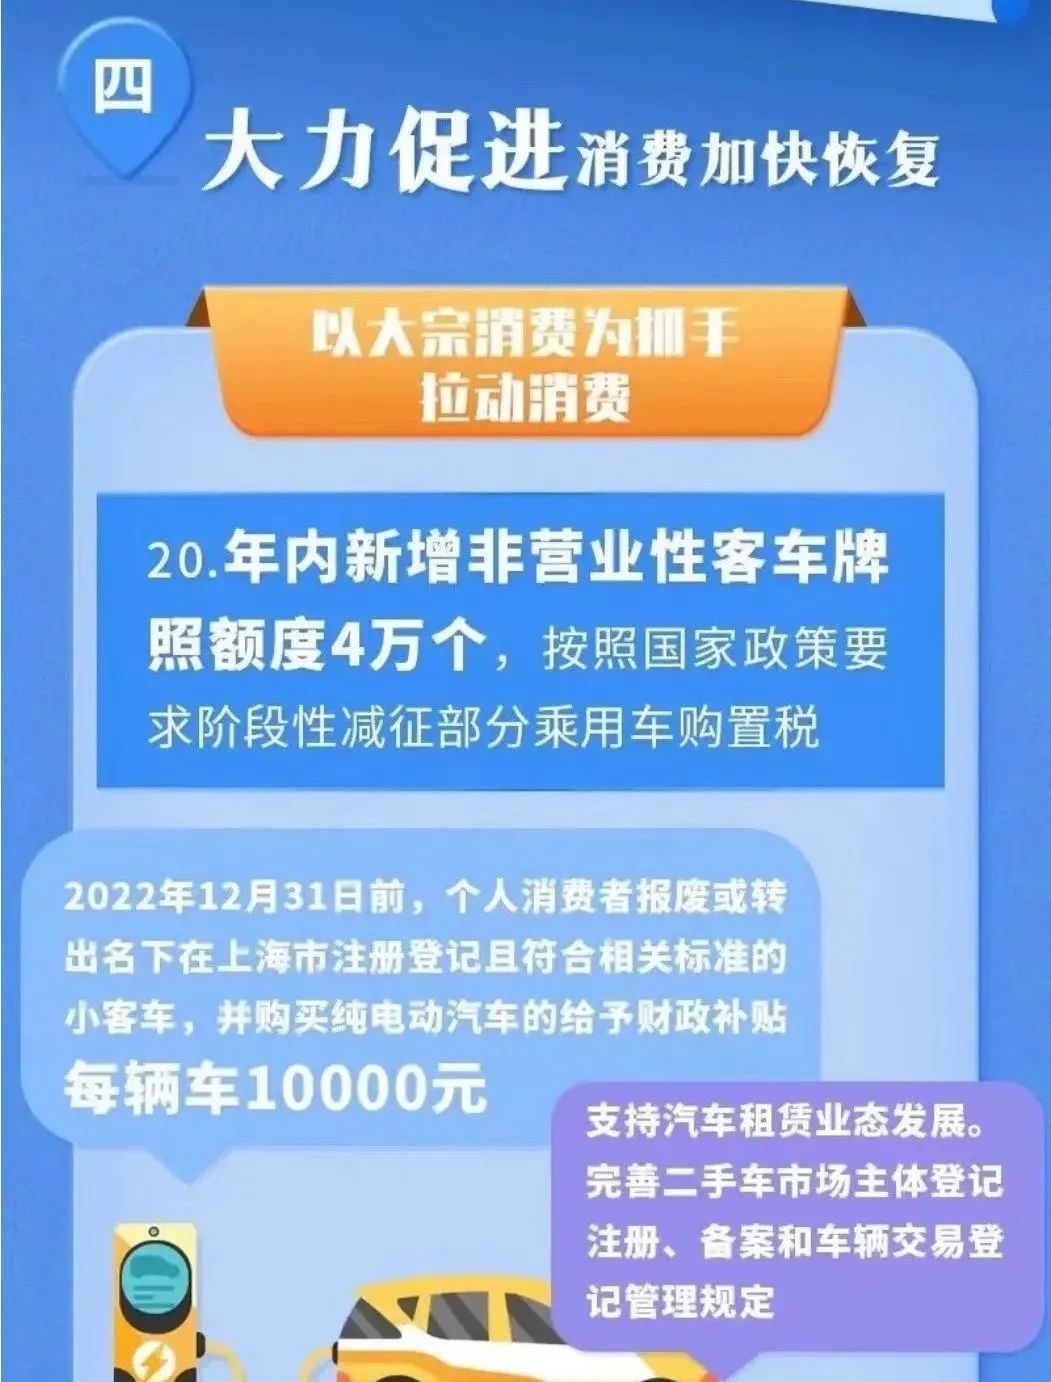 ob欧宝:20227月上海1万元旧车置换补贴咋整